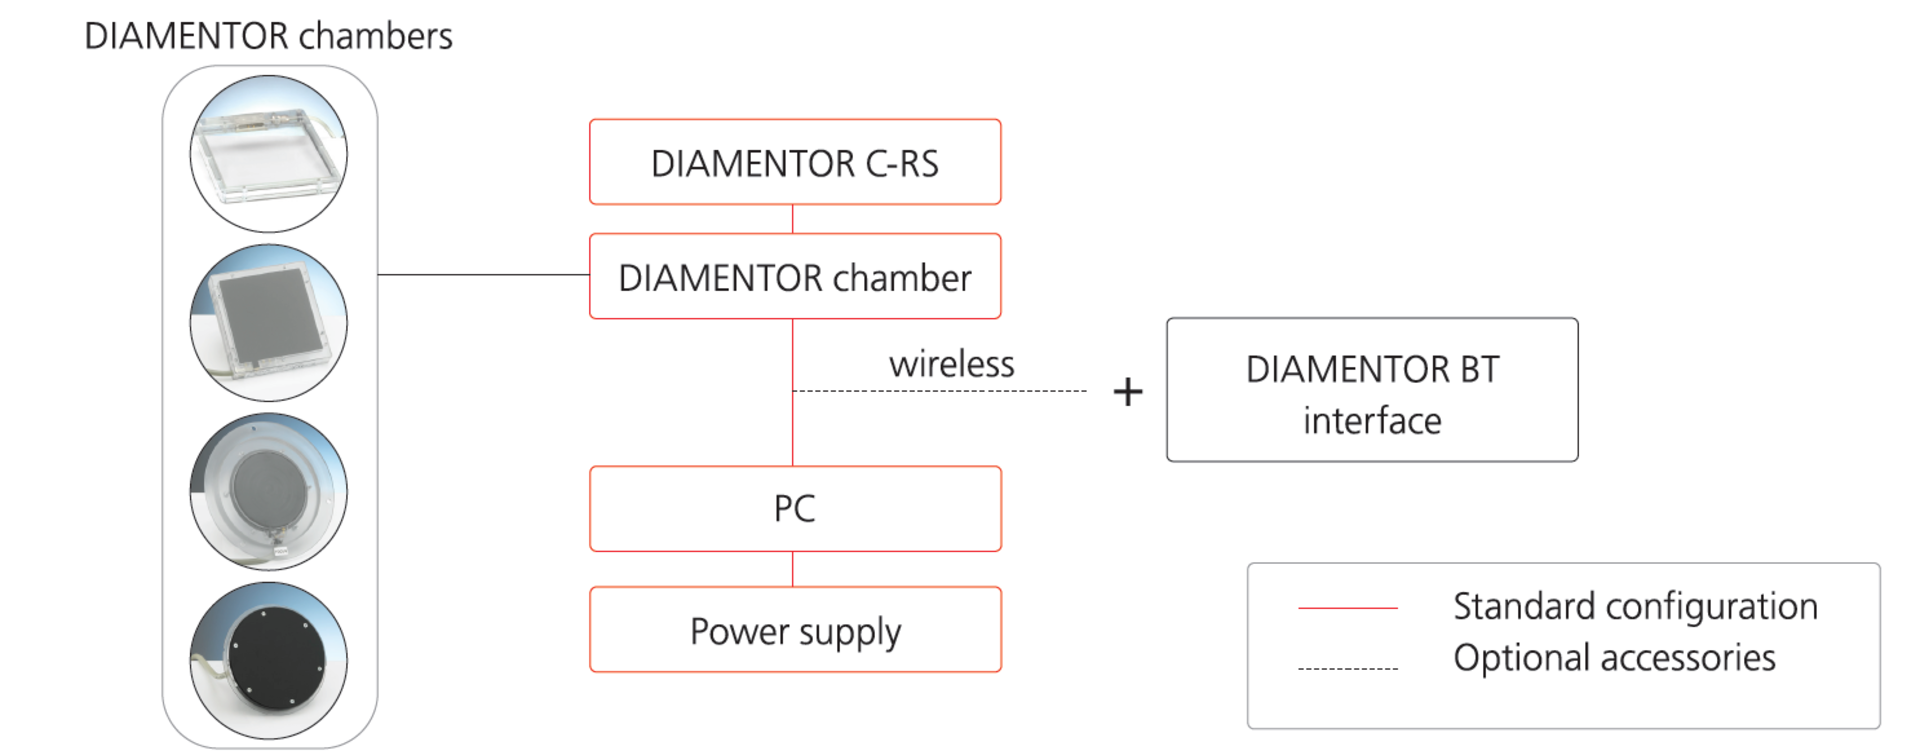 DIAMENTOR chambers + DIAMENTOR BT interface